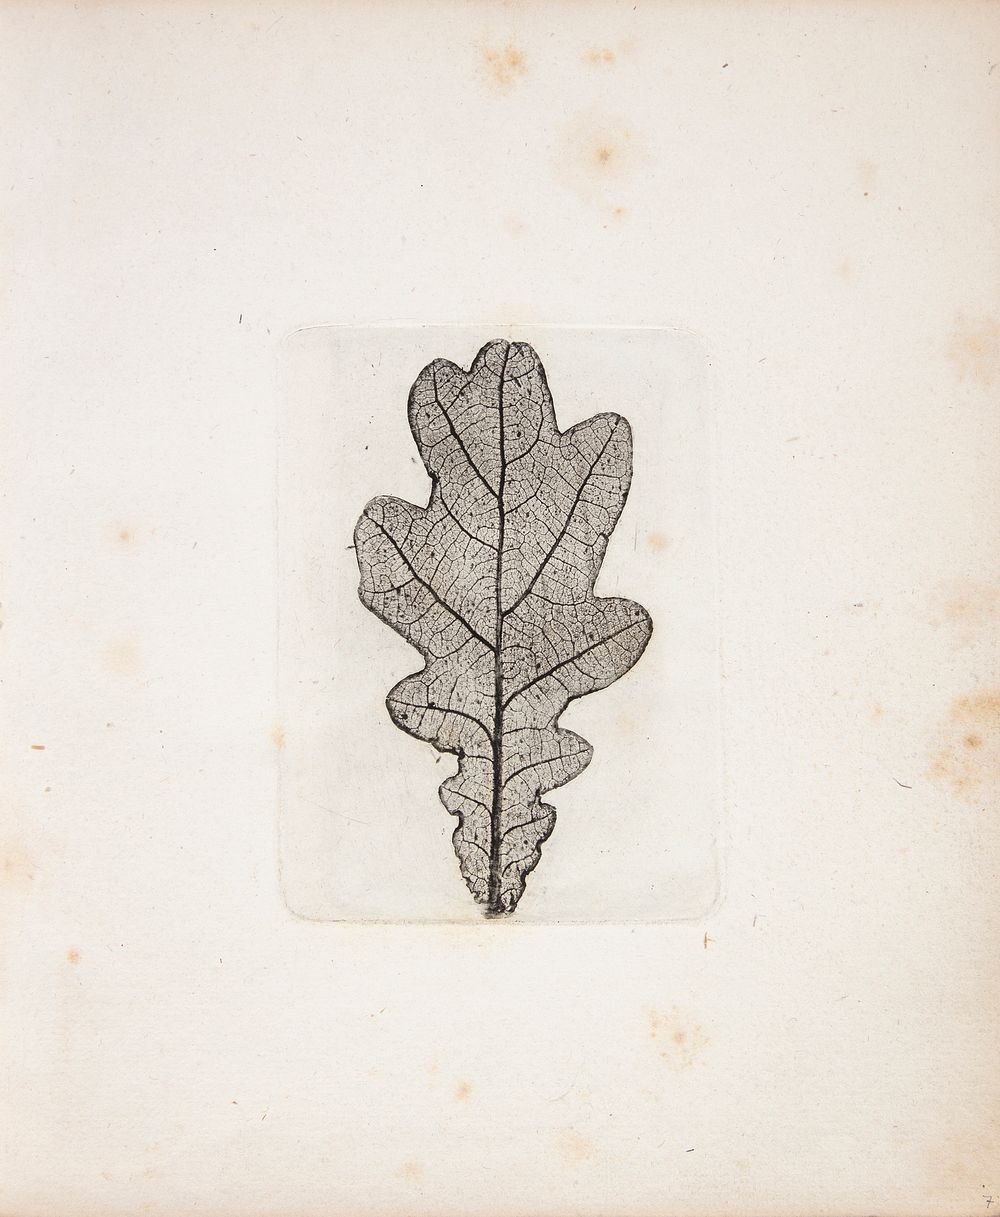 Impression of oak leaf by Peter Larsen Kyhl